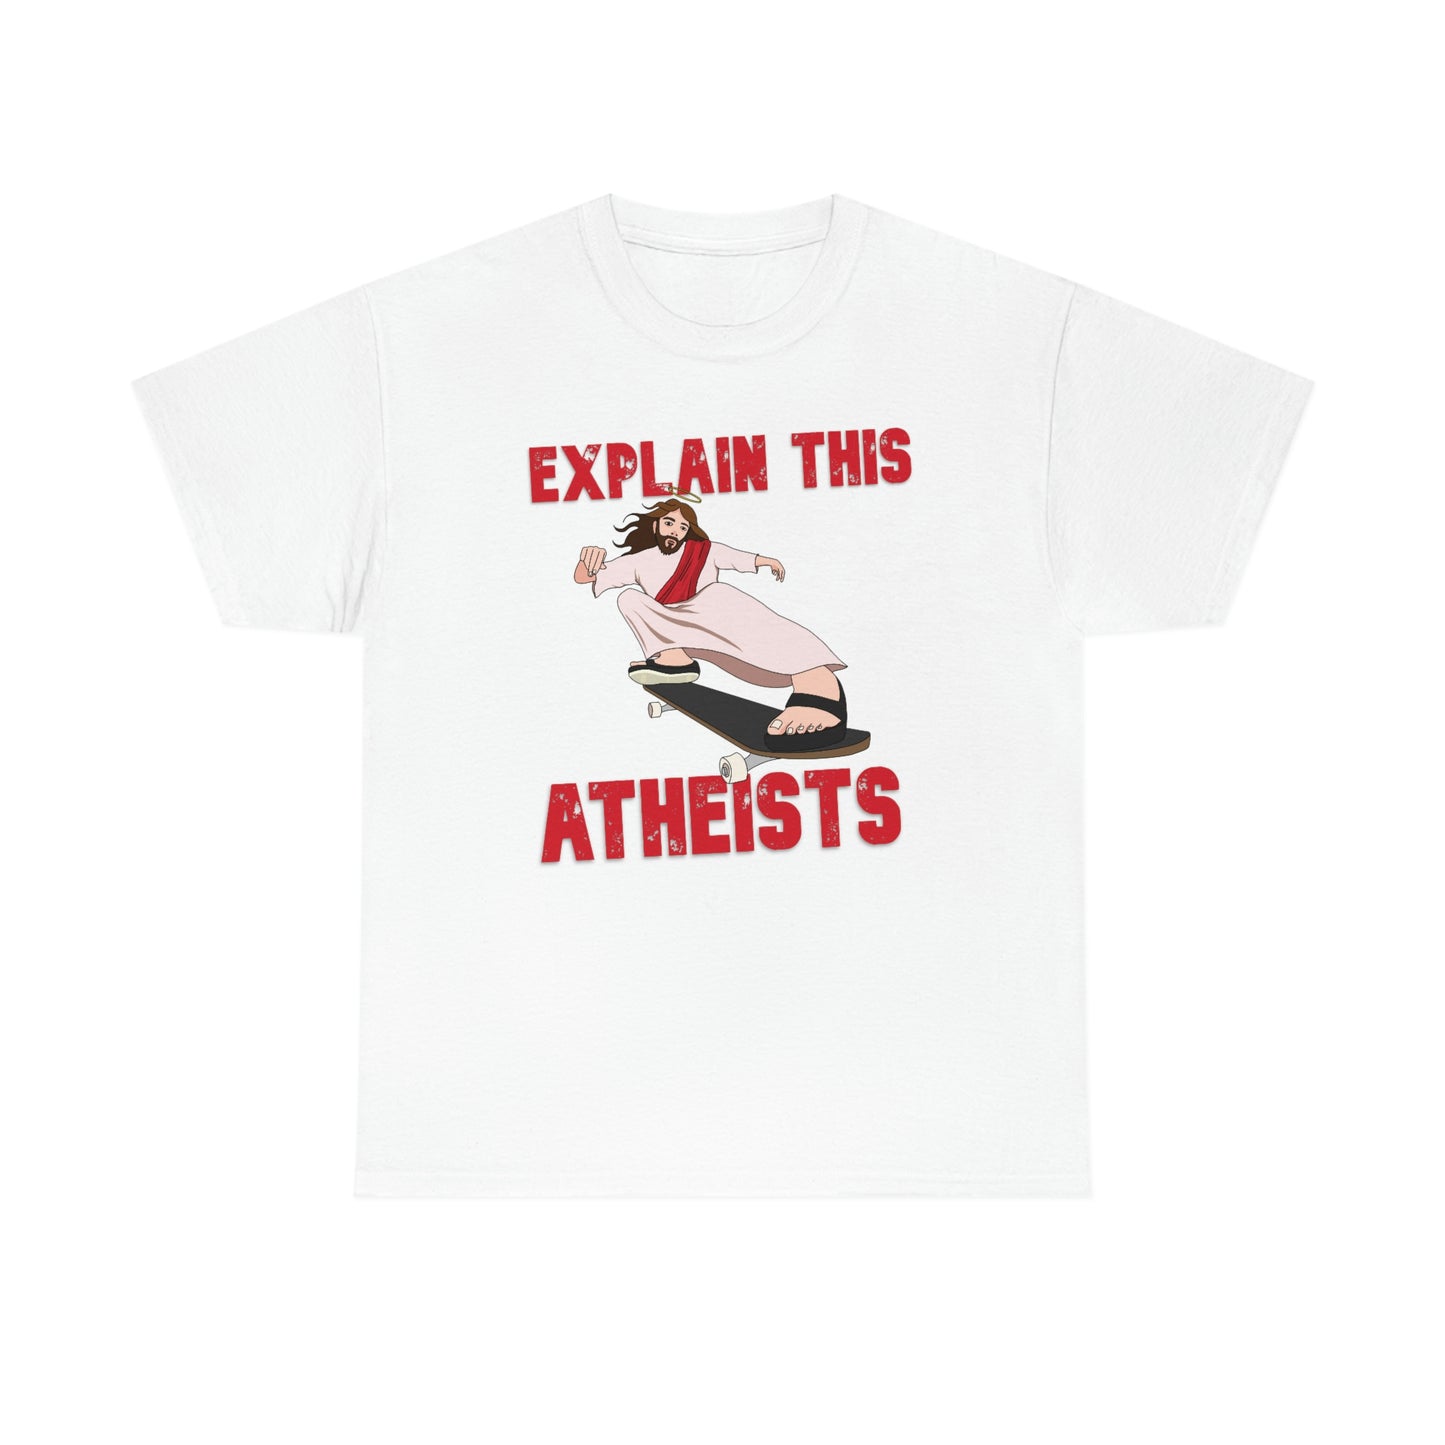 Explain this Atheists Jesus Skateboarding - Unisex Heavy Cotton Tee